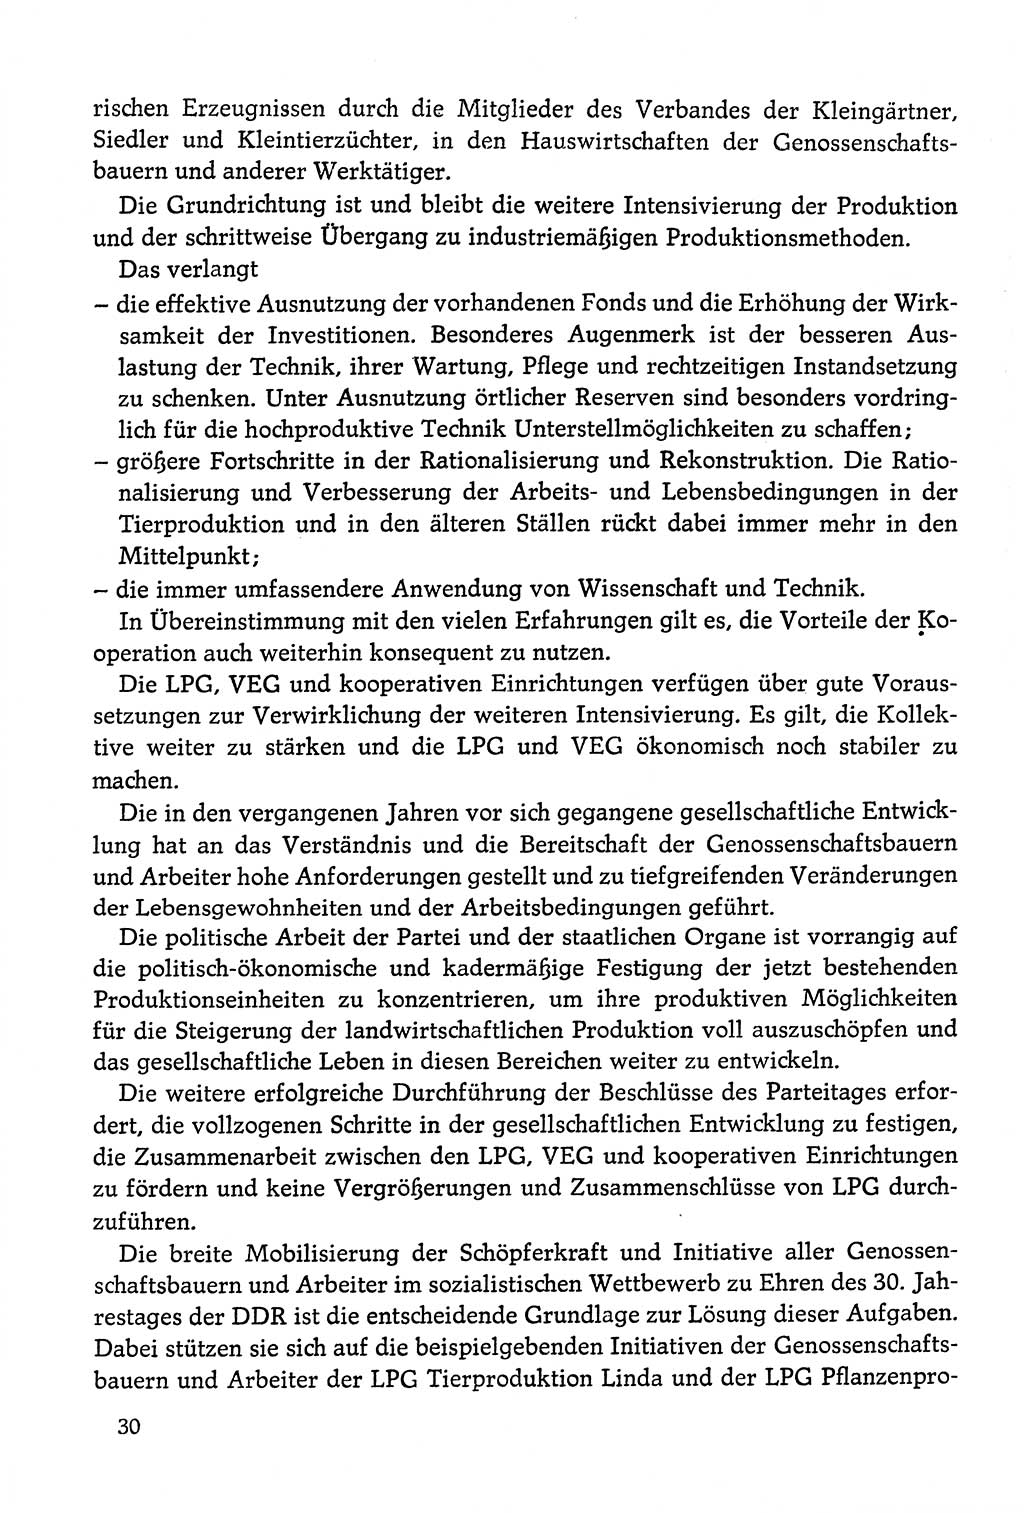 Dokumente der Sozialistischen Einheitspartei Deutschlands (SED) [Deutsche Demokratische Republik (DDR)] 1978-1979, Seite 30 (Dok. SED DDR 1978-1979, S. 30)